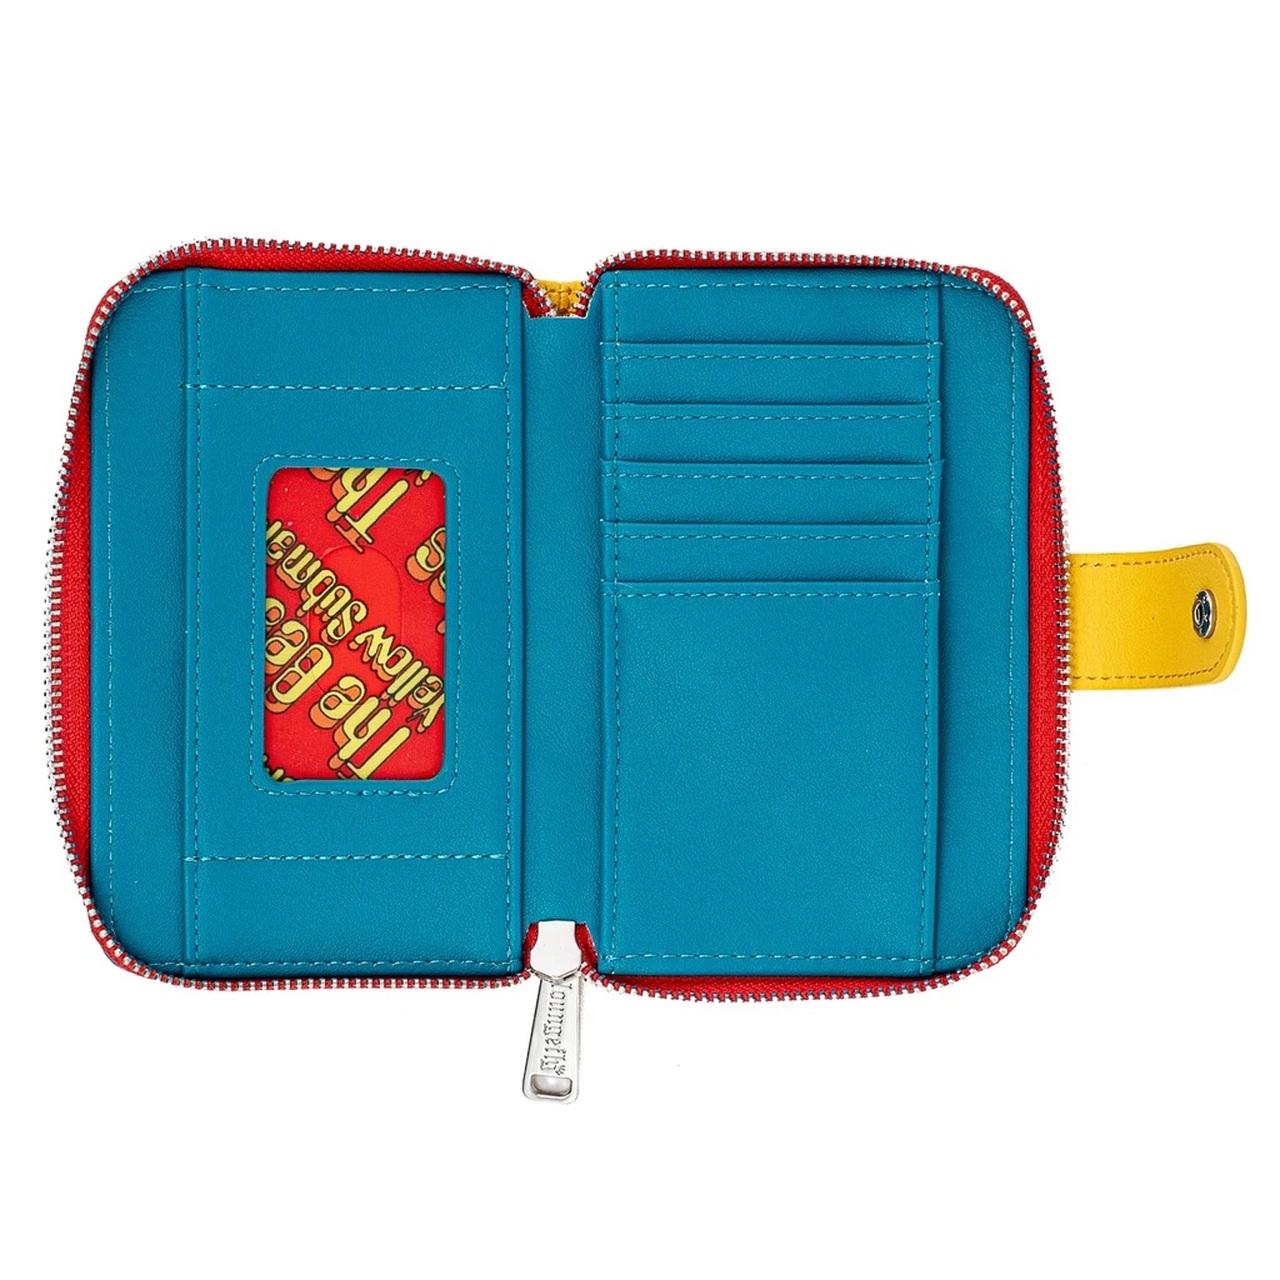 Beatles zipper wallet 